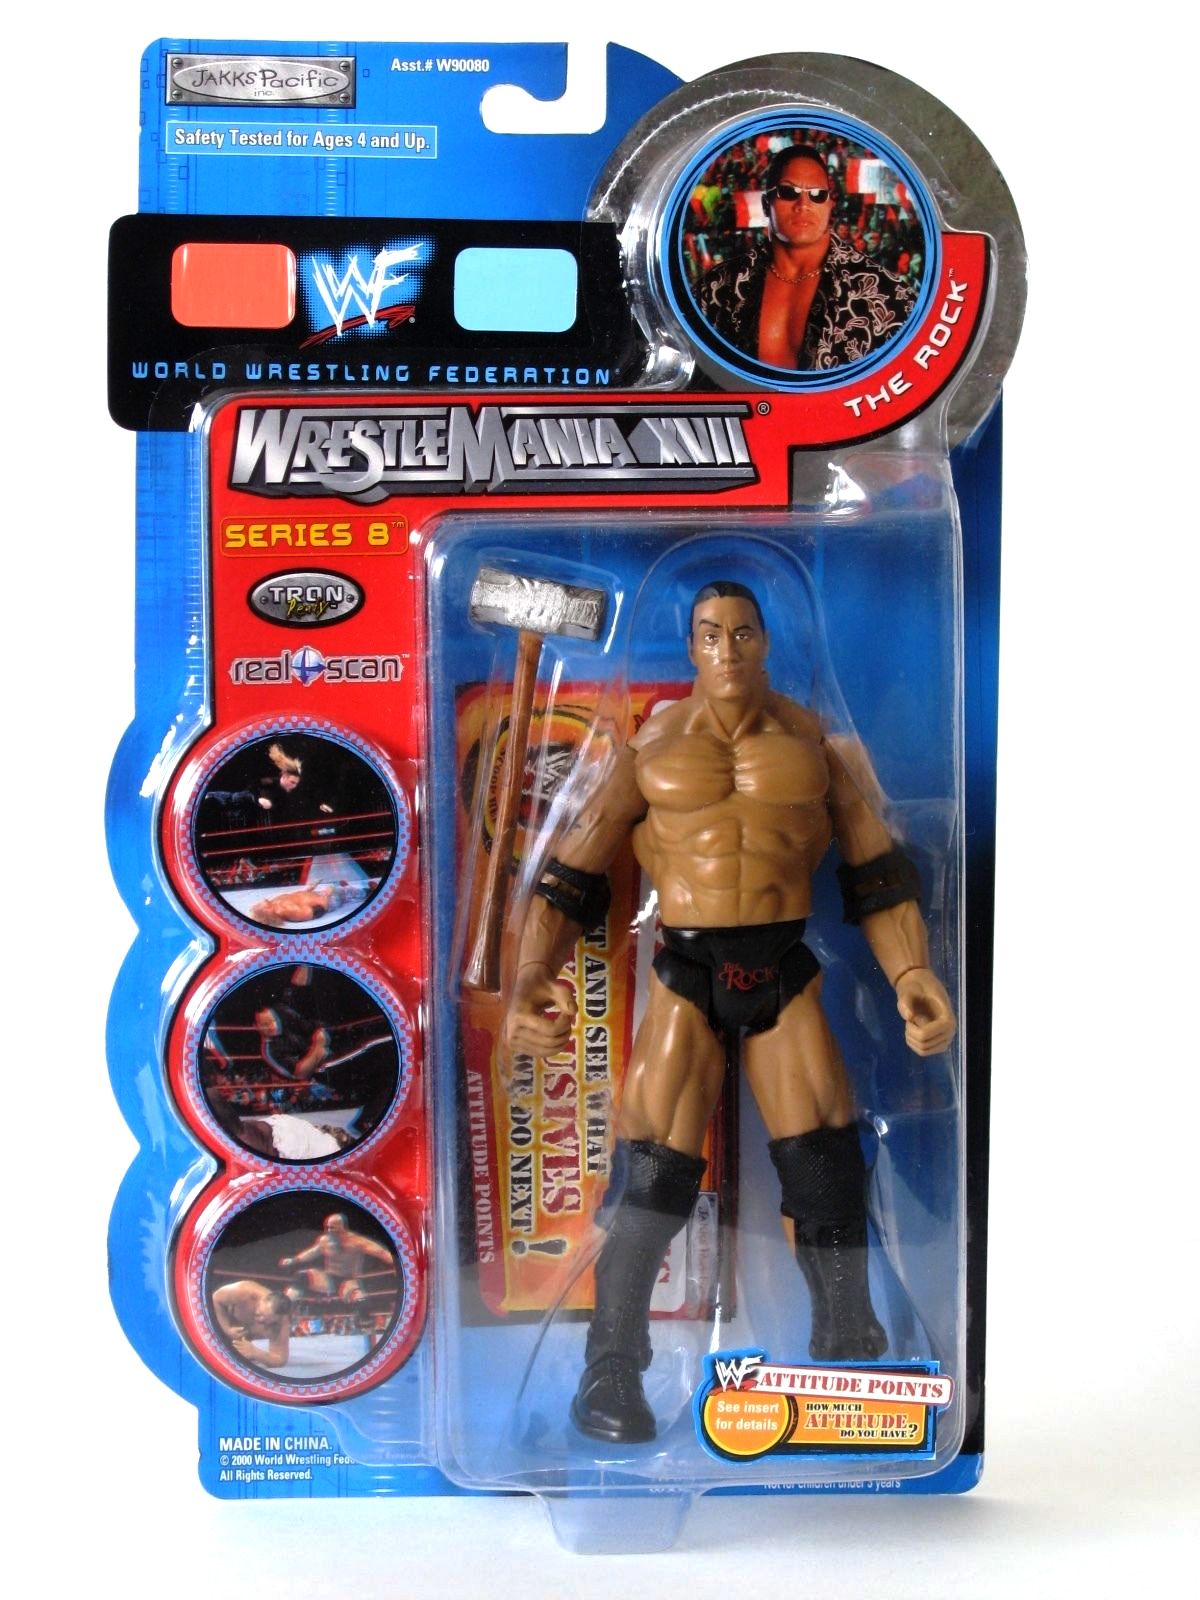 The Rock (“WWF-WrestleMania XVII”) Series-8 “Rare-Vintage” (2000 